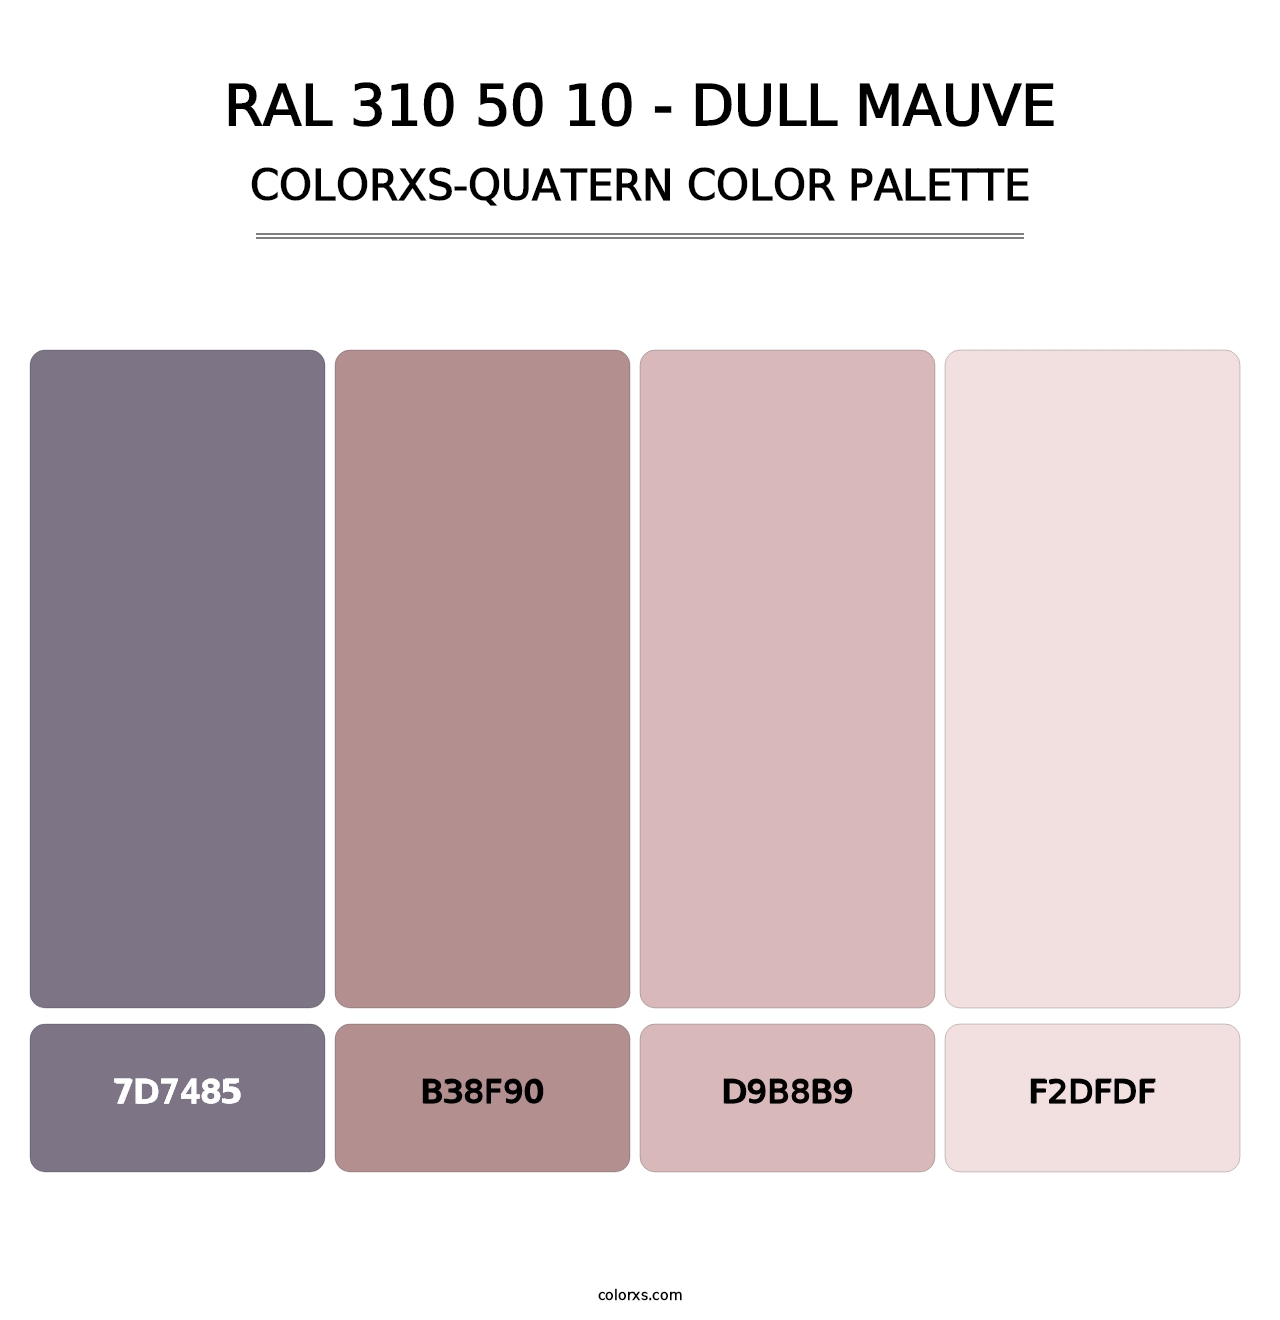 RAL 310 50 10 - Dull Mauve - Colorxs Quatern Palette